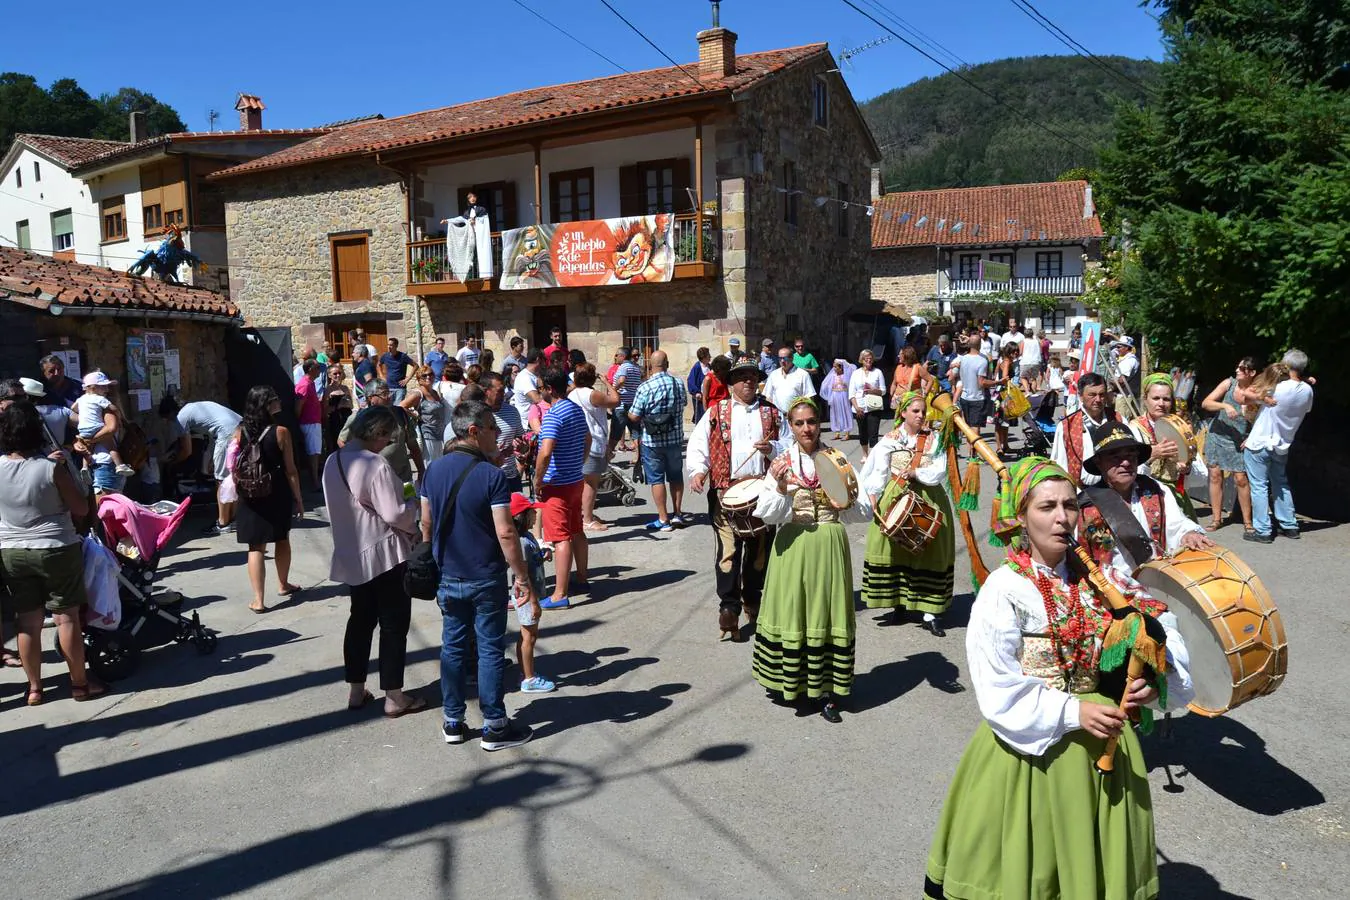 Fotos: Así es Barriopalacio de Anievas, Pueblo de Cantabria 2019